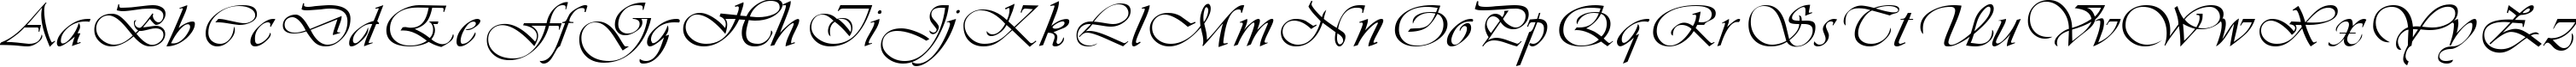 Пример написания английского алфавита шрифтом Vivacious